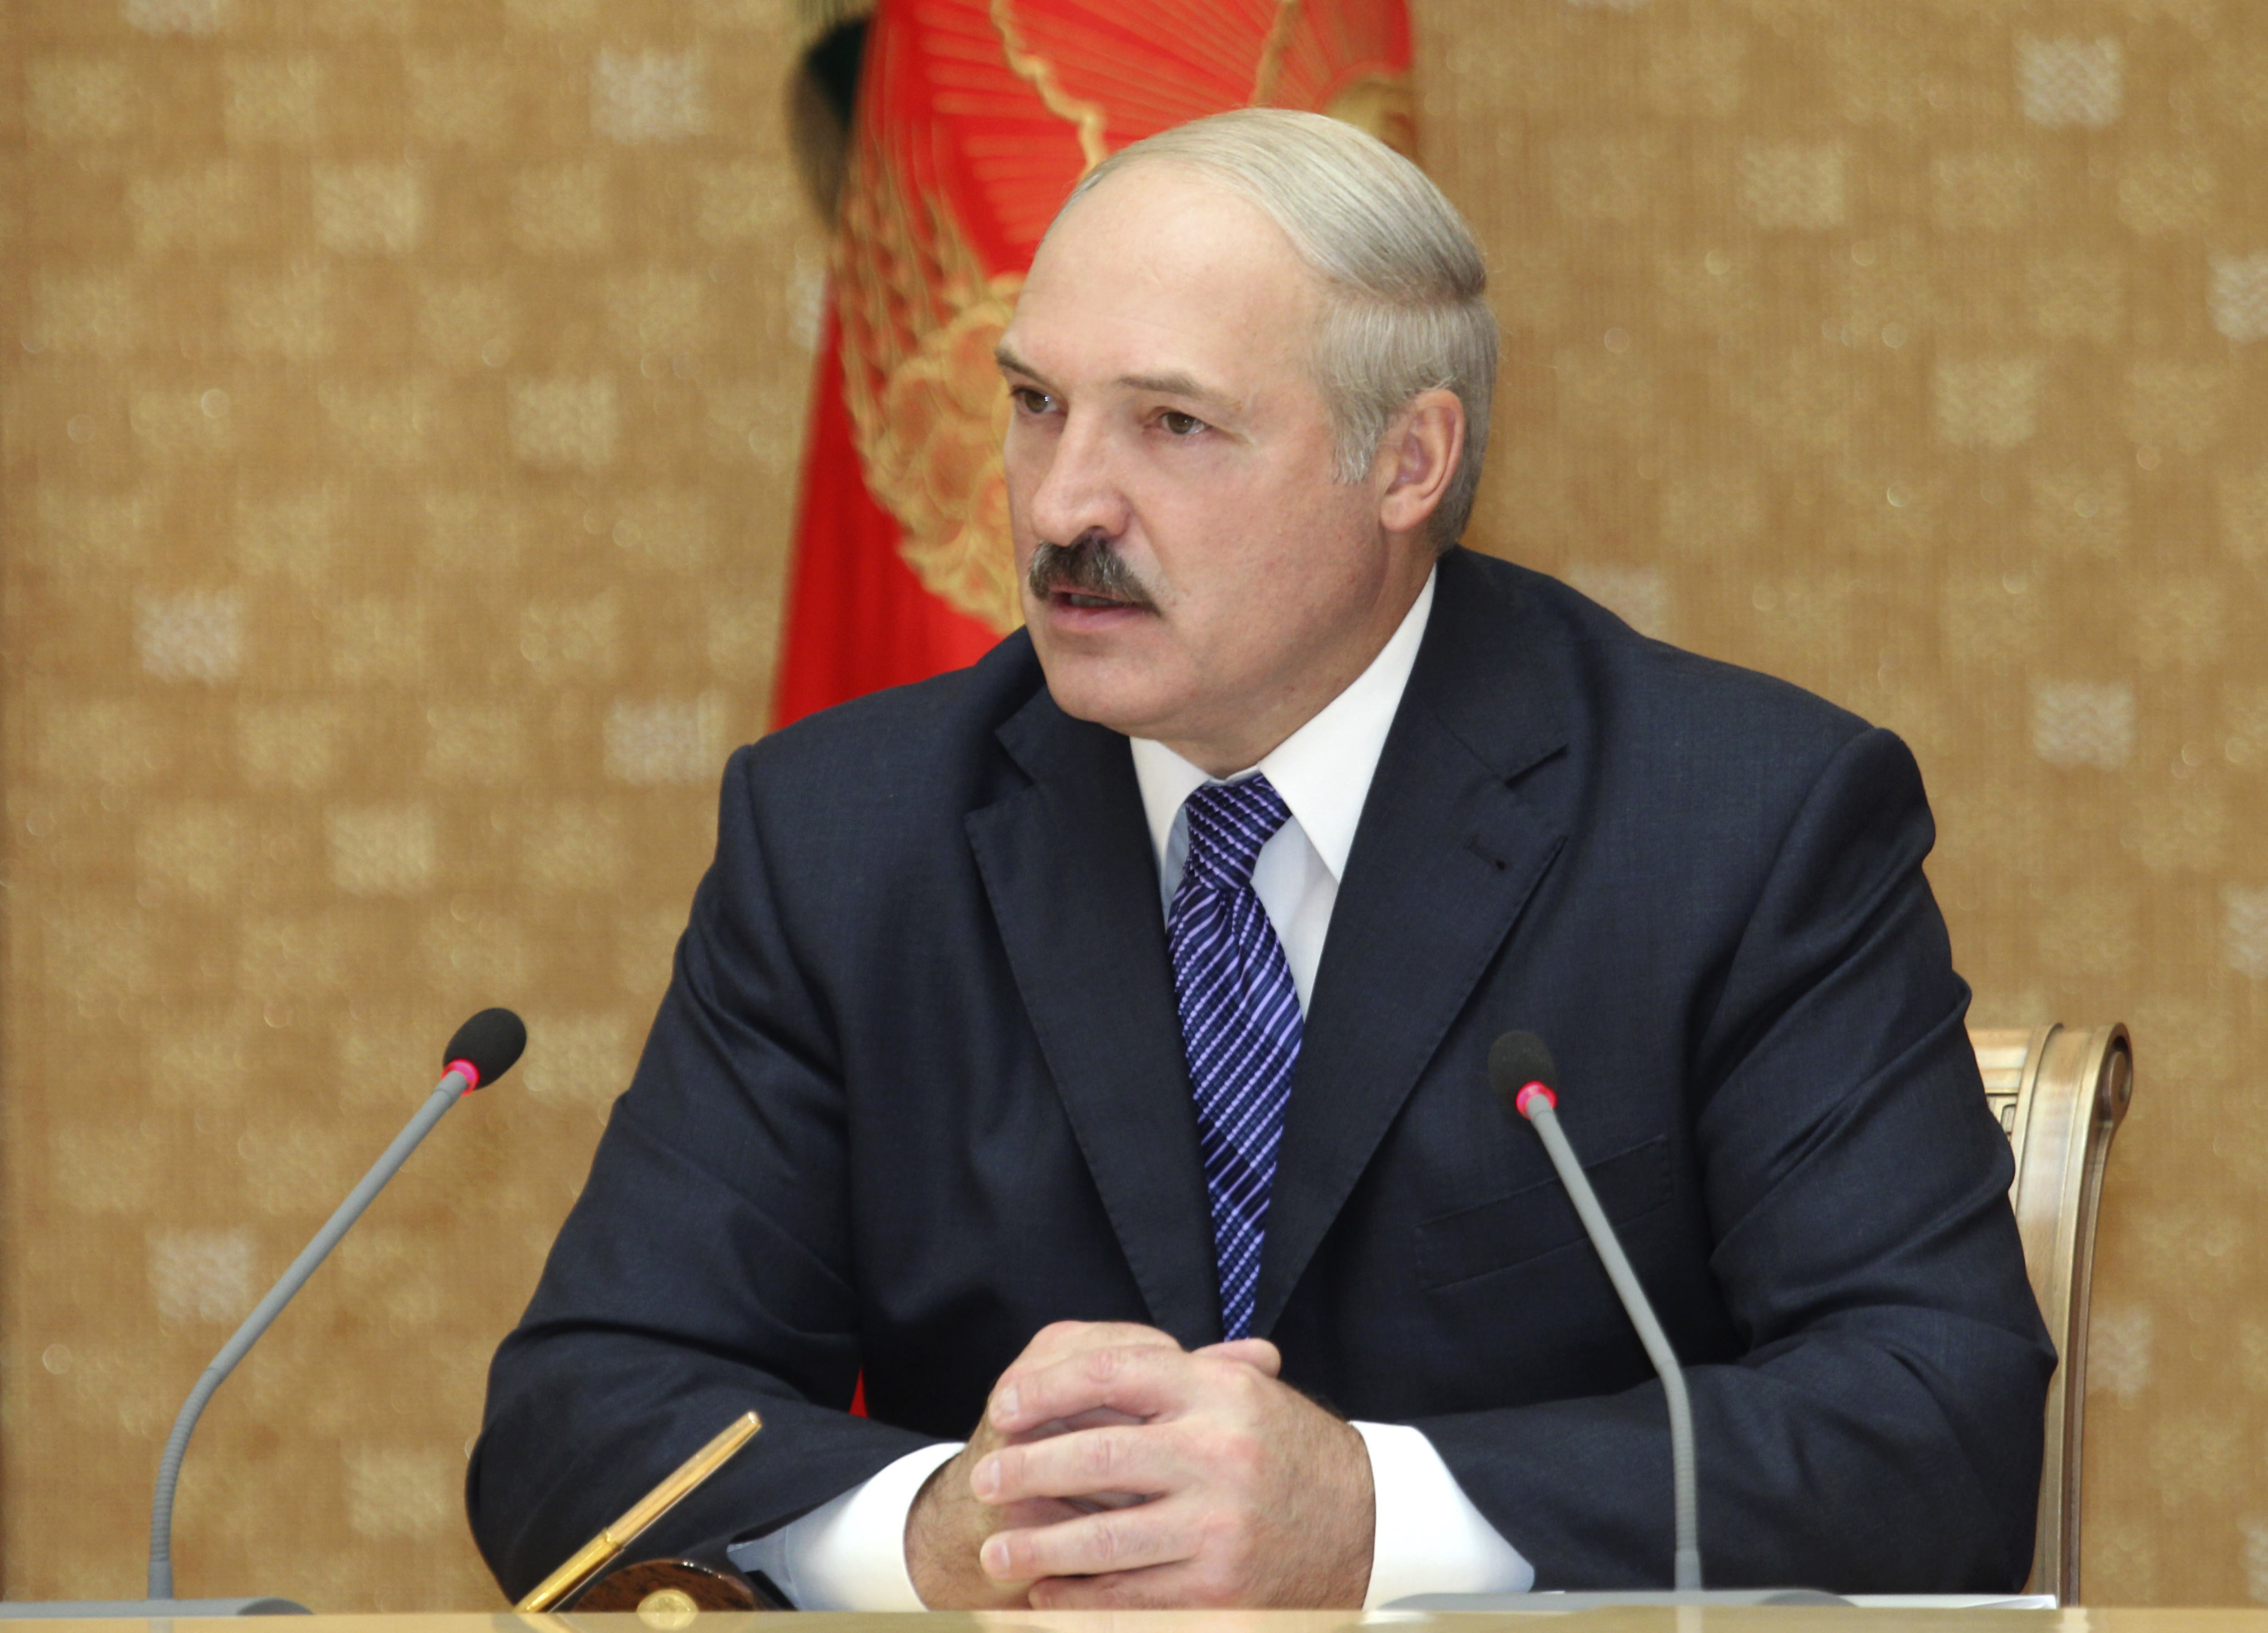 Alexander Grigoryevich Lukashenko - President i Vitryssland sedan 1994. Hans regim är känd för att inte bry sig om mänskliga rättigheter och helt försumma internationella lagar och överenskommelser. Vitryssland kallas för "Det sista sanna diktatorskapet i